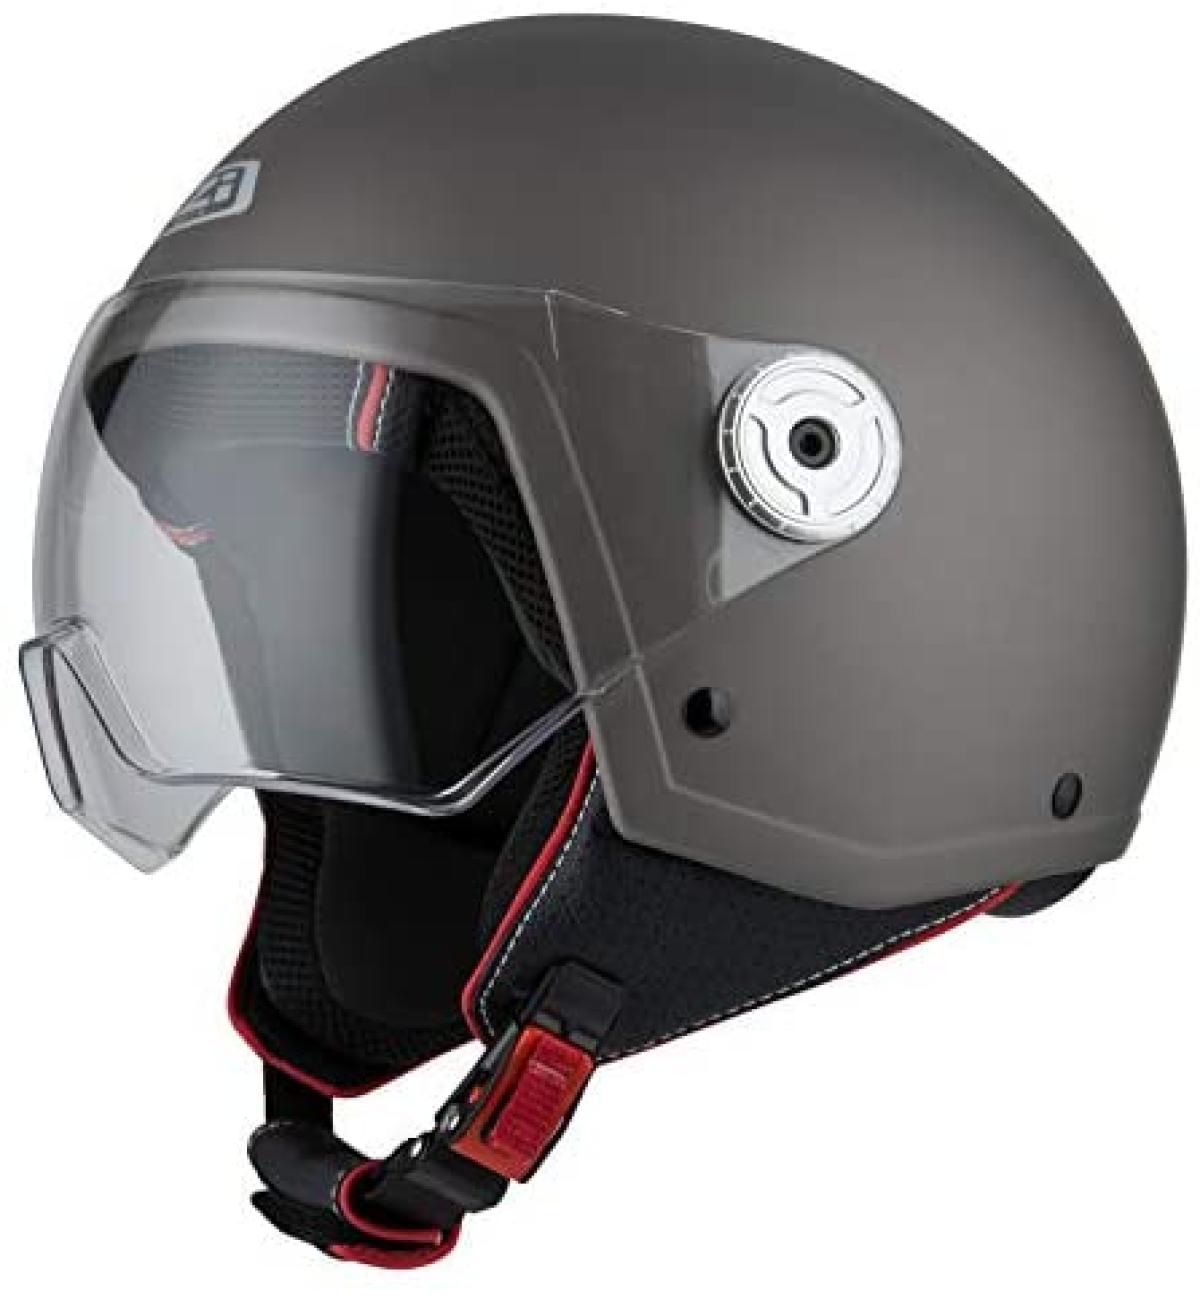 para justificar Disfraces Labor 10 cascos de moto homologados por la DGT que son realmente baratos -- Motos  -- Autobild.es